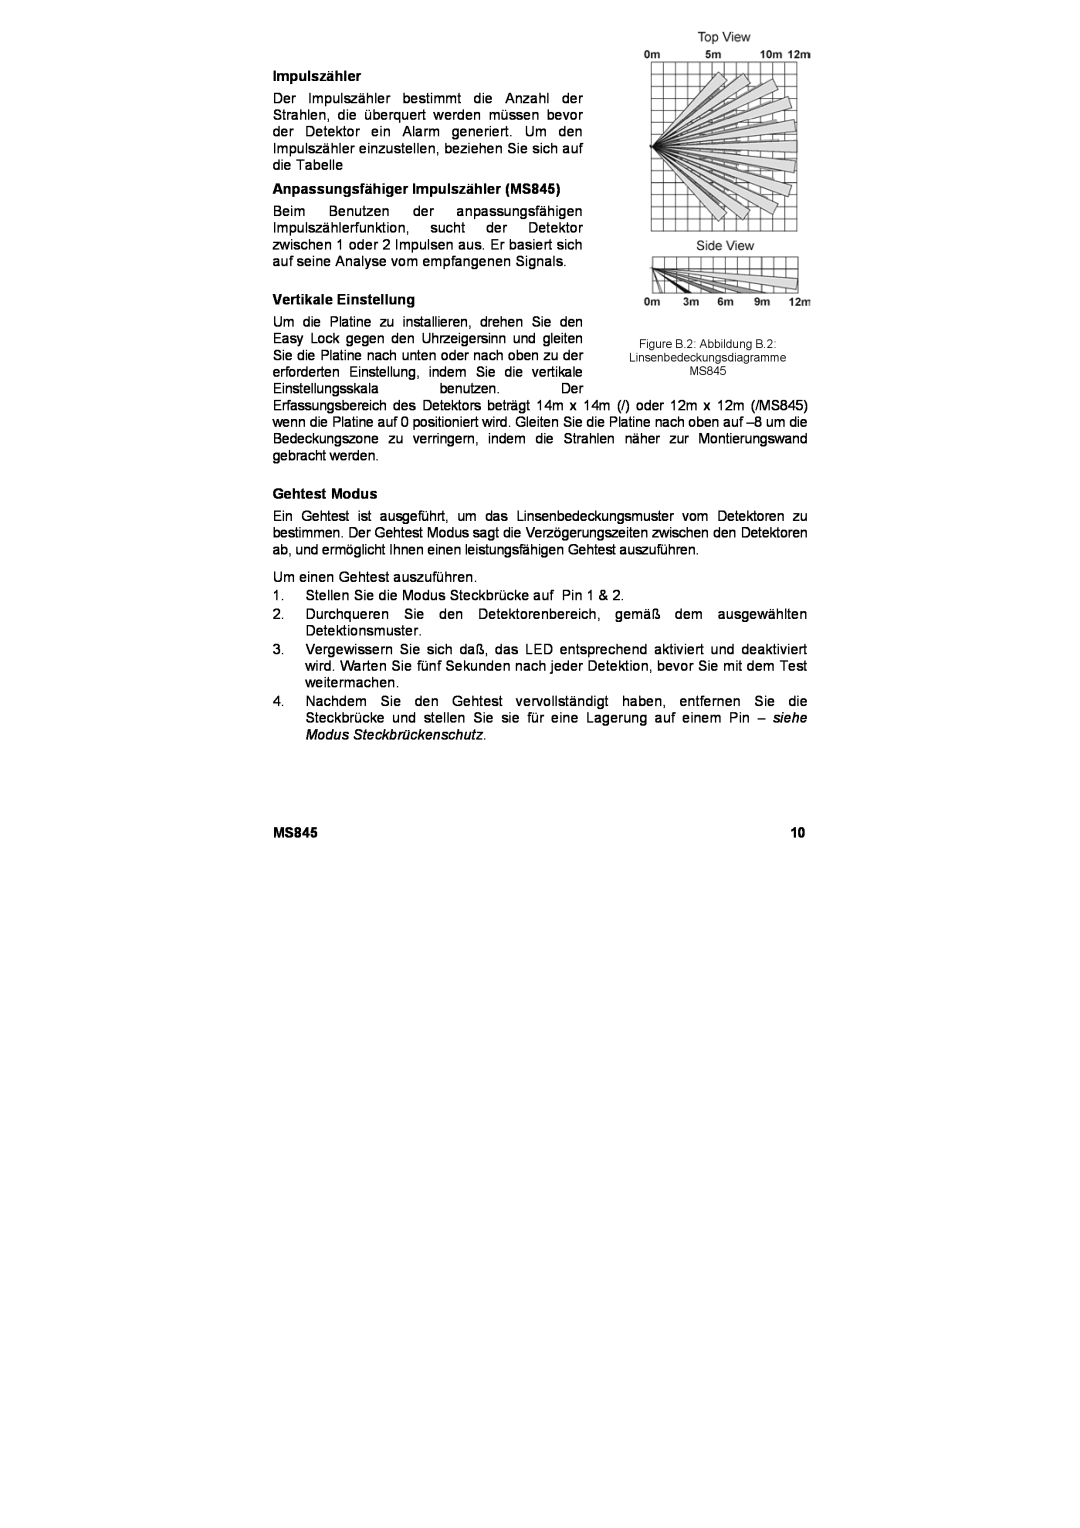 Marmitek user manual Anpassungsfähiger Impulszähler MS845, Vertikale Einstellung, Gehtest Modus 